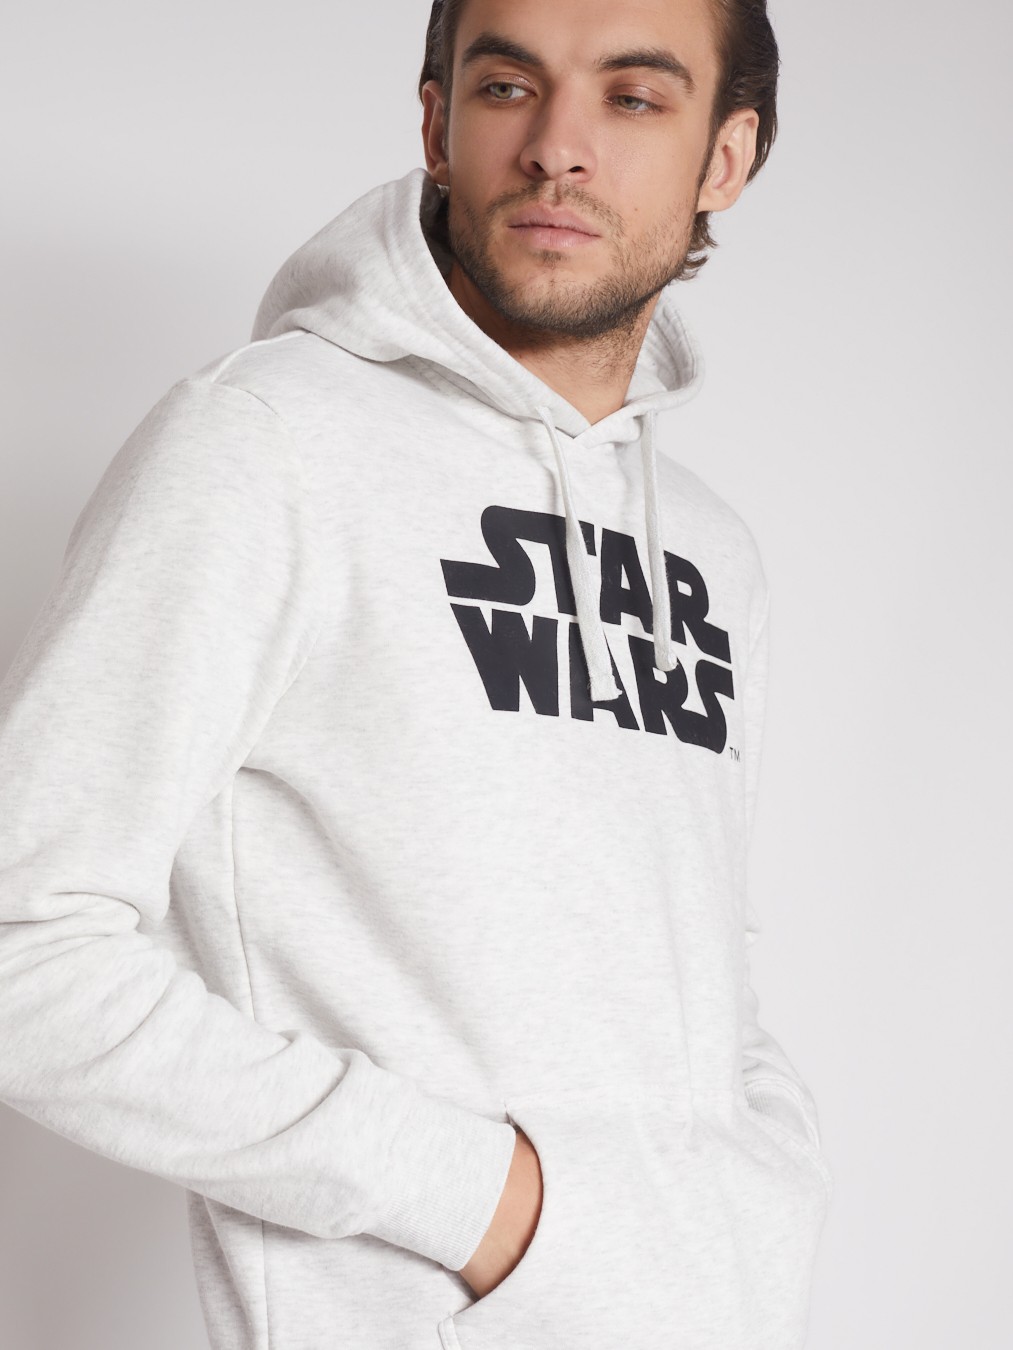 Худи с принтом Звёздные войны (Star Wars) zolla 512334179081, цвет светло-серый, размер S - фото 5